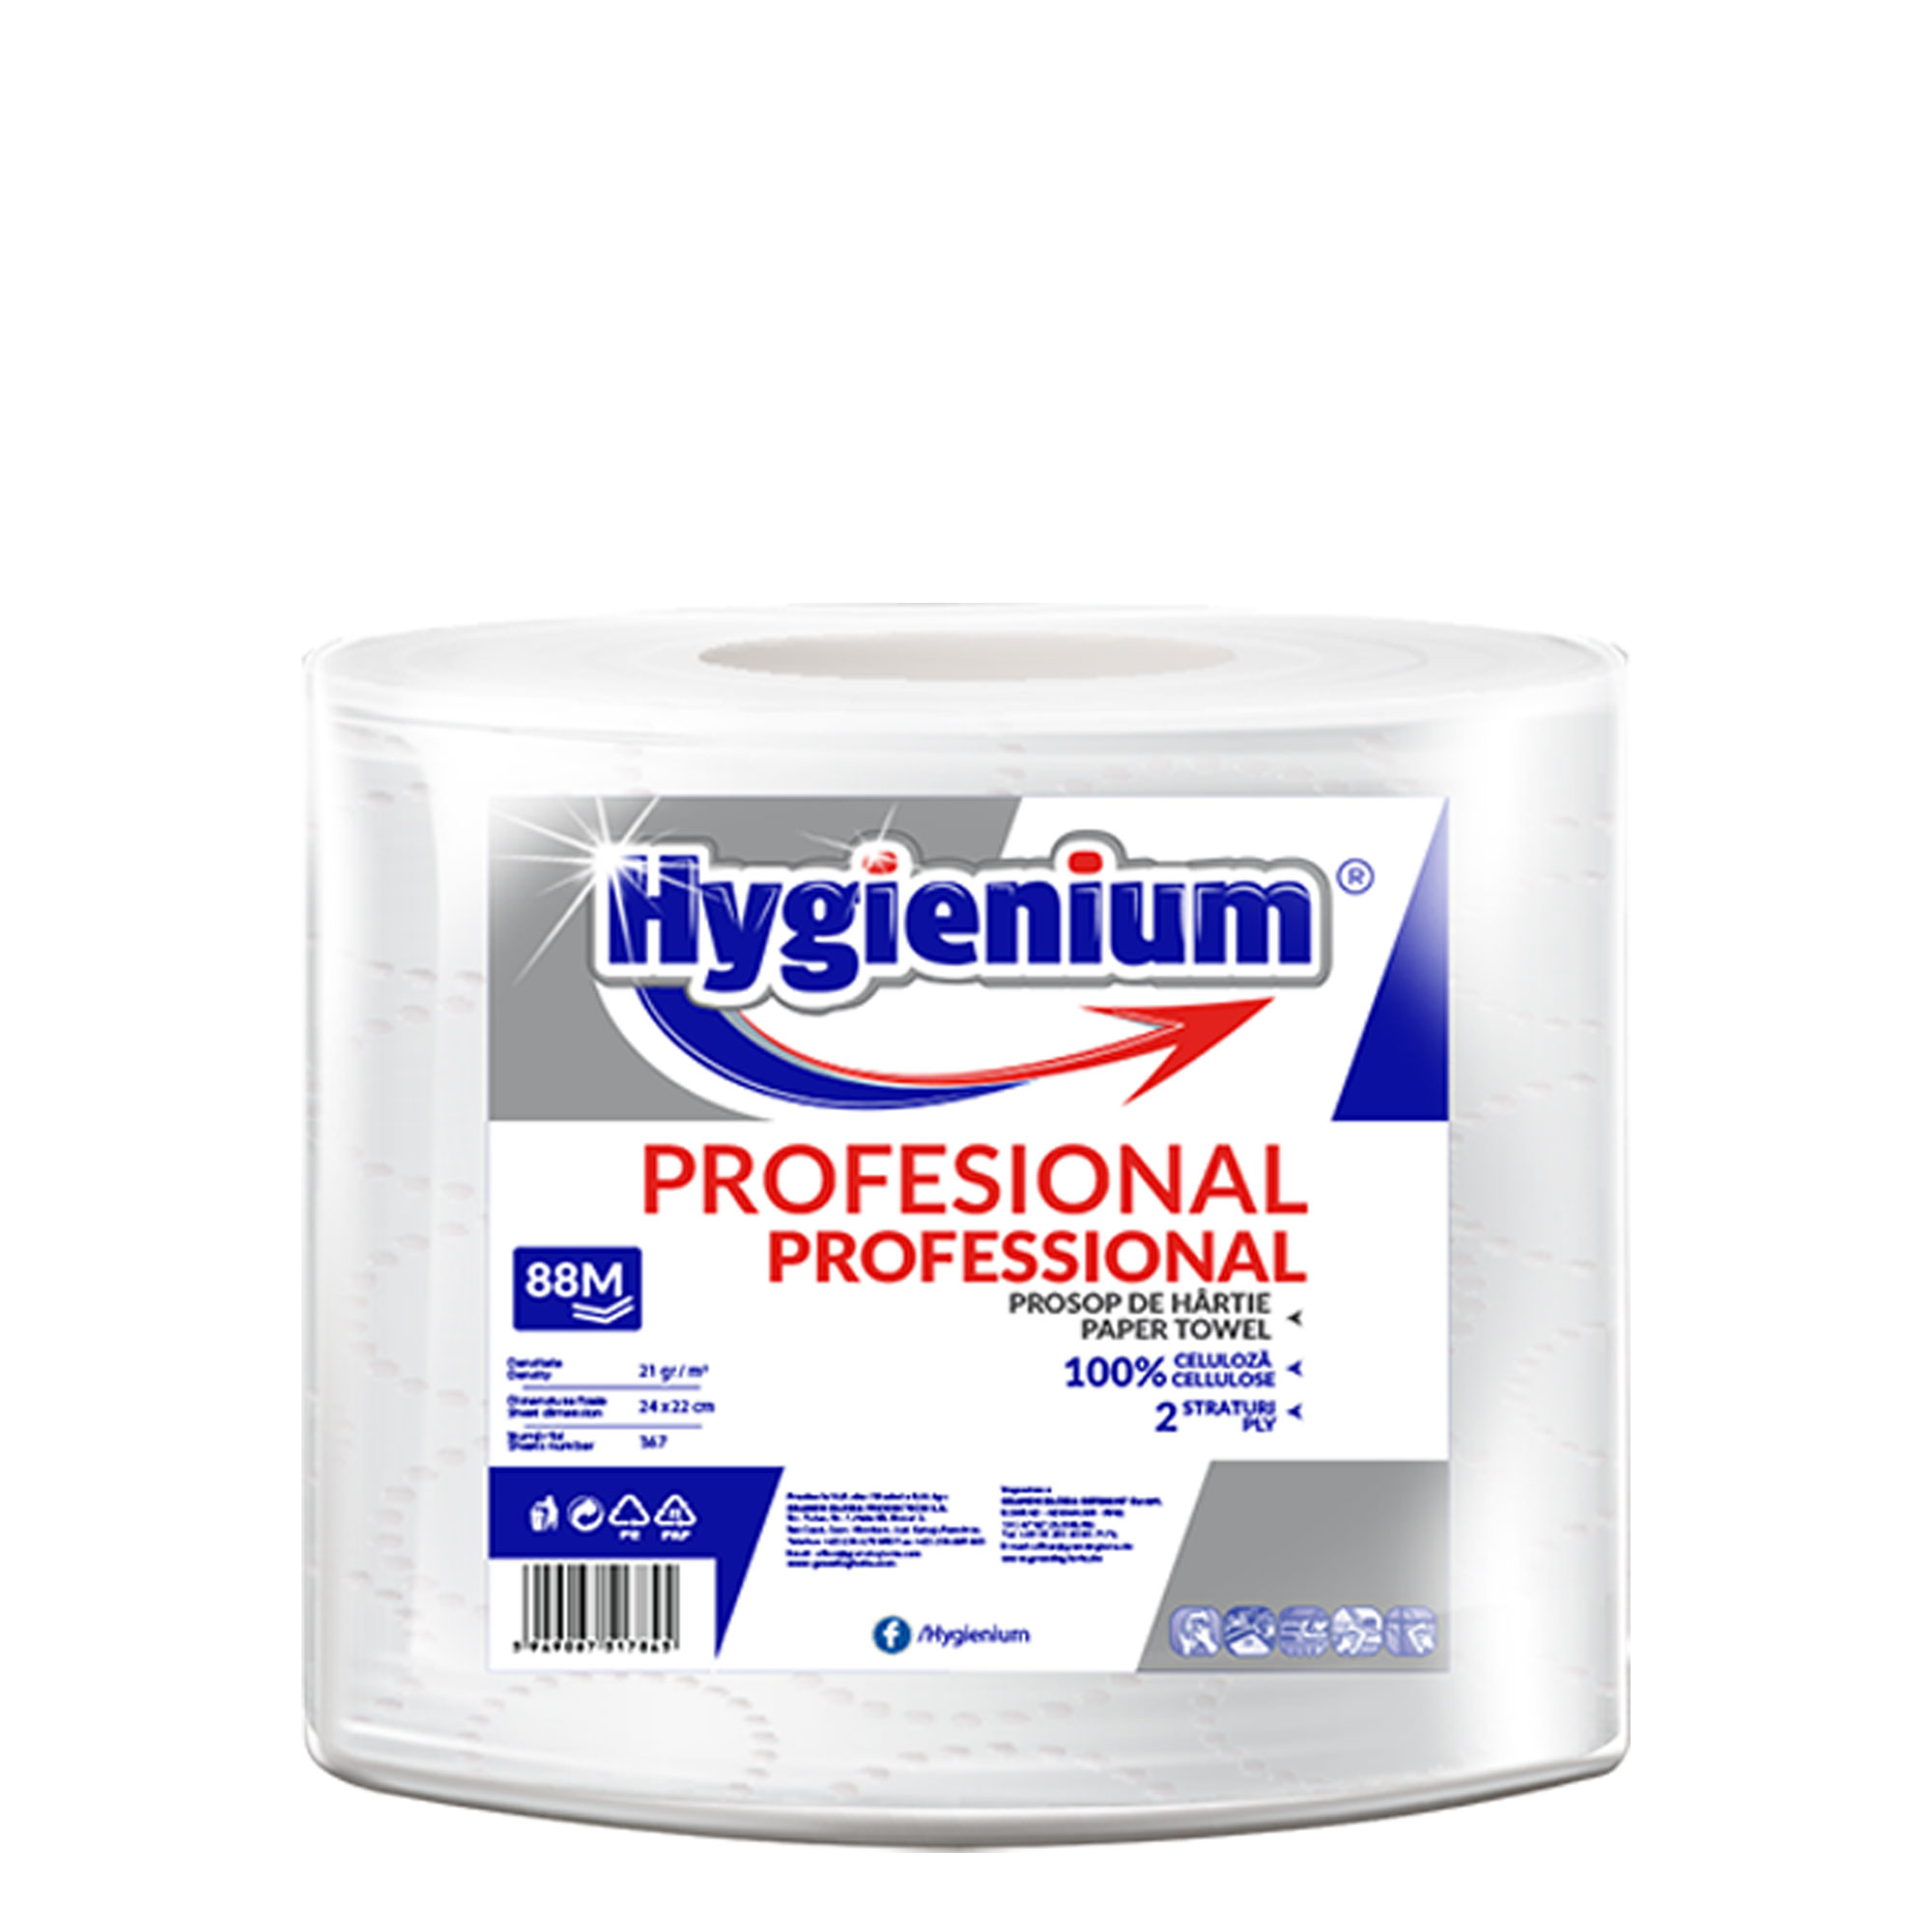 Hygienium Professional Prosop hartie 88 M 